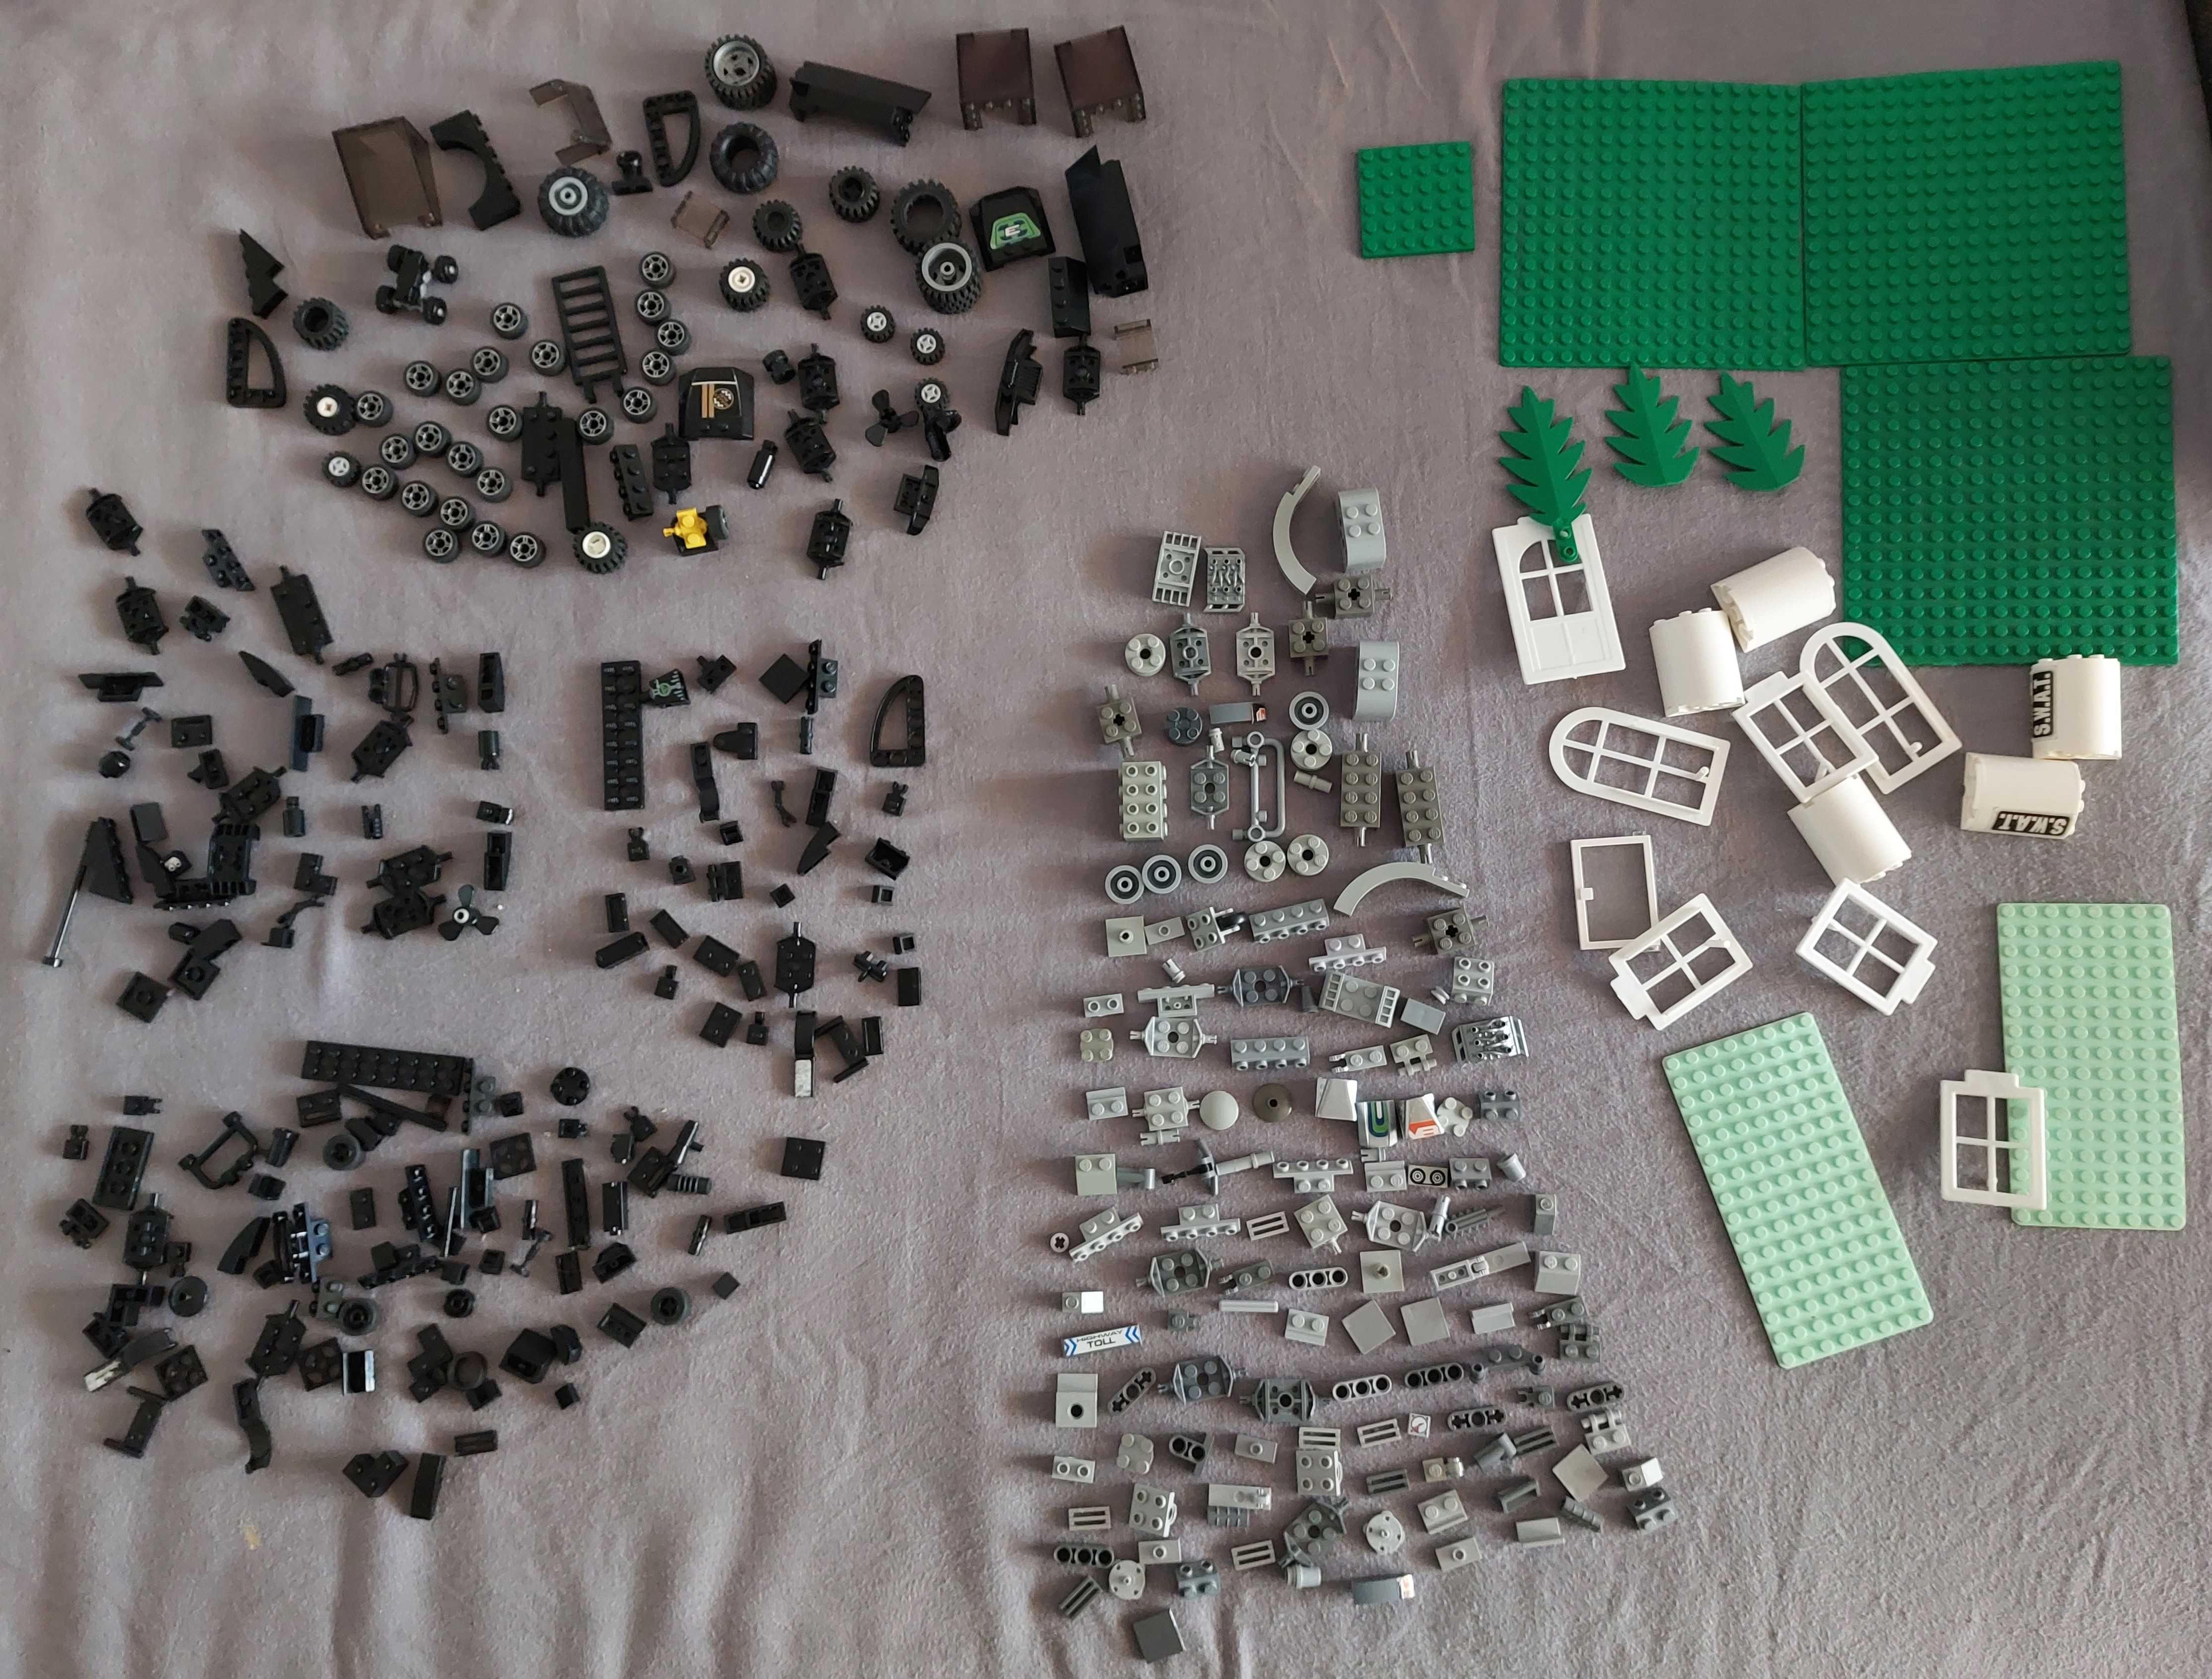 LEGO Mega zestaw 2100 szt. klocków lego, różne kształty i kolory